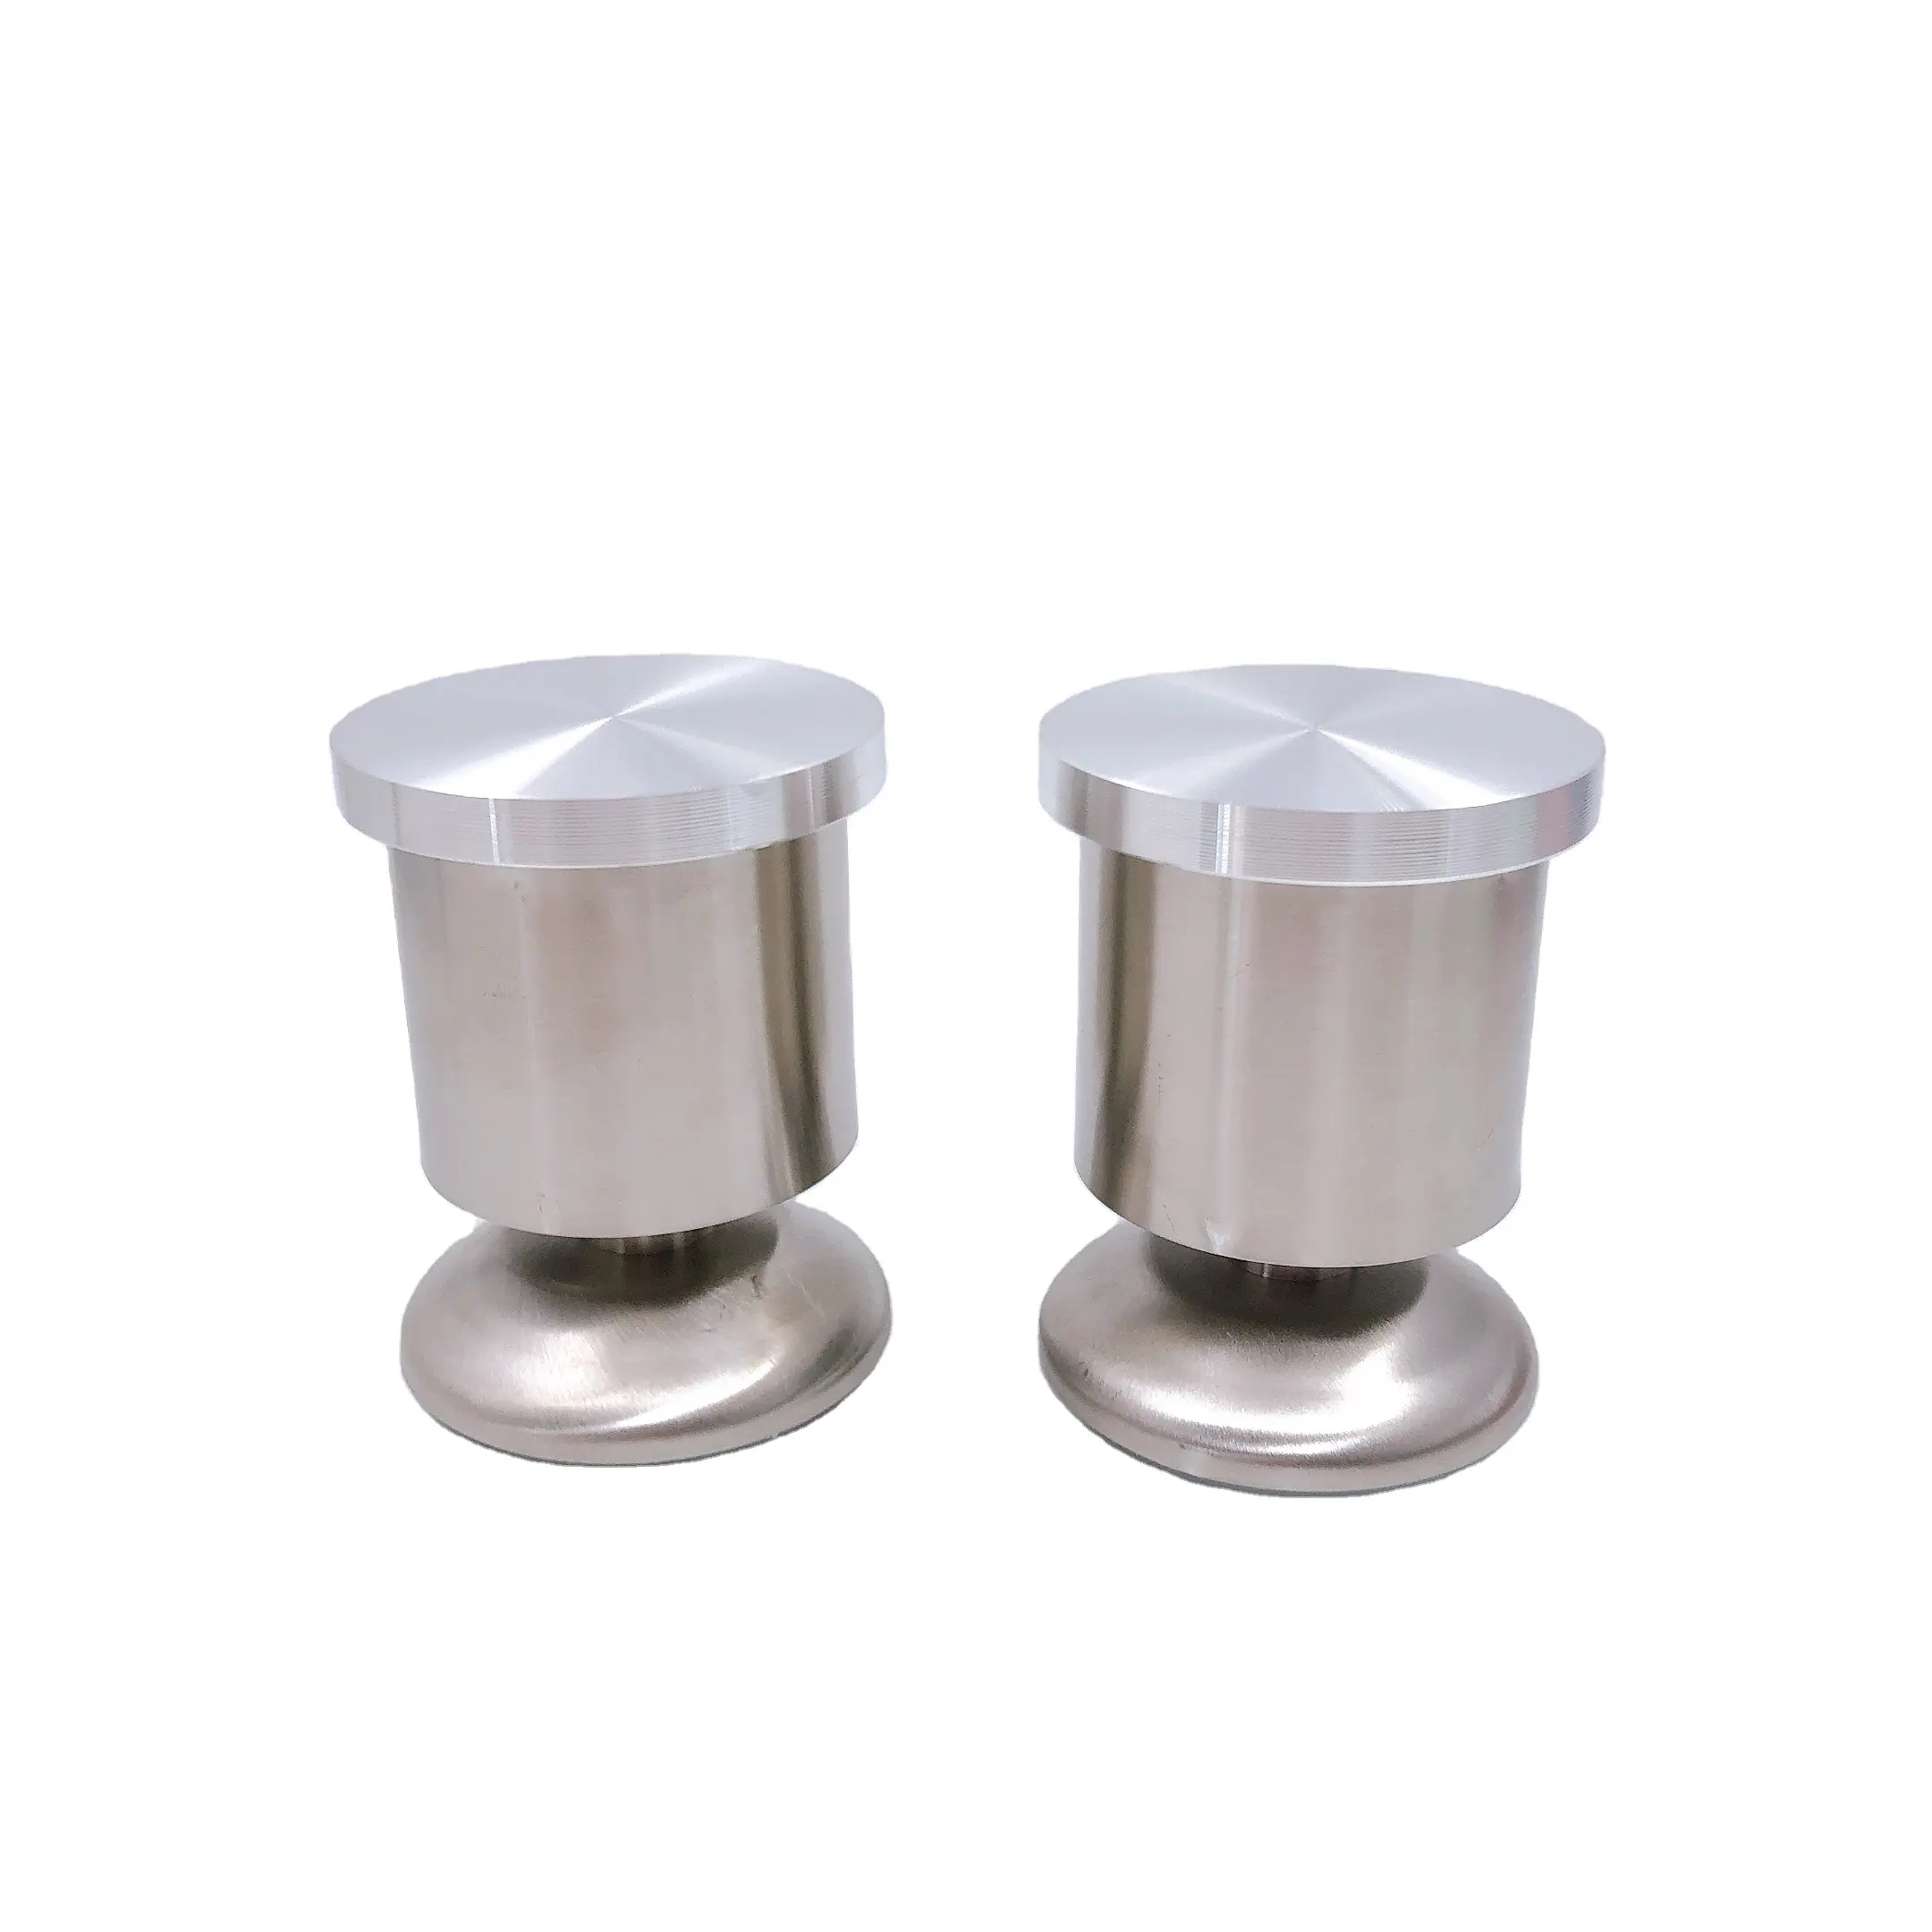 China fabrik versorgung küche schrank punch-freies metall edelstahl beine für möbel kaffee tisch runde bein glas tisch beine